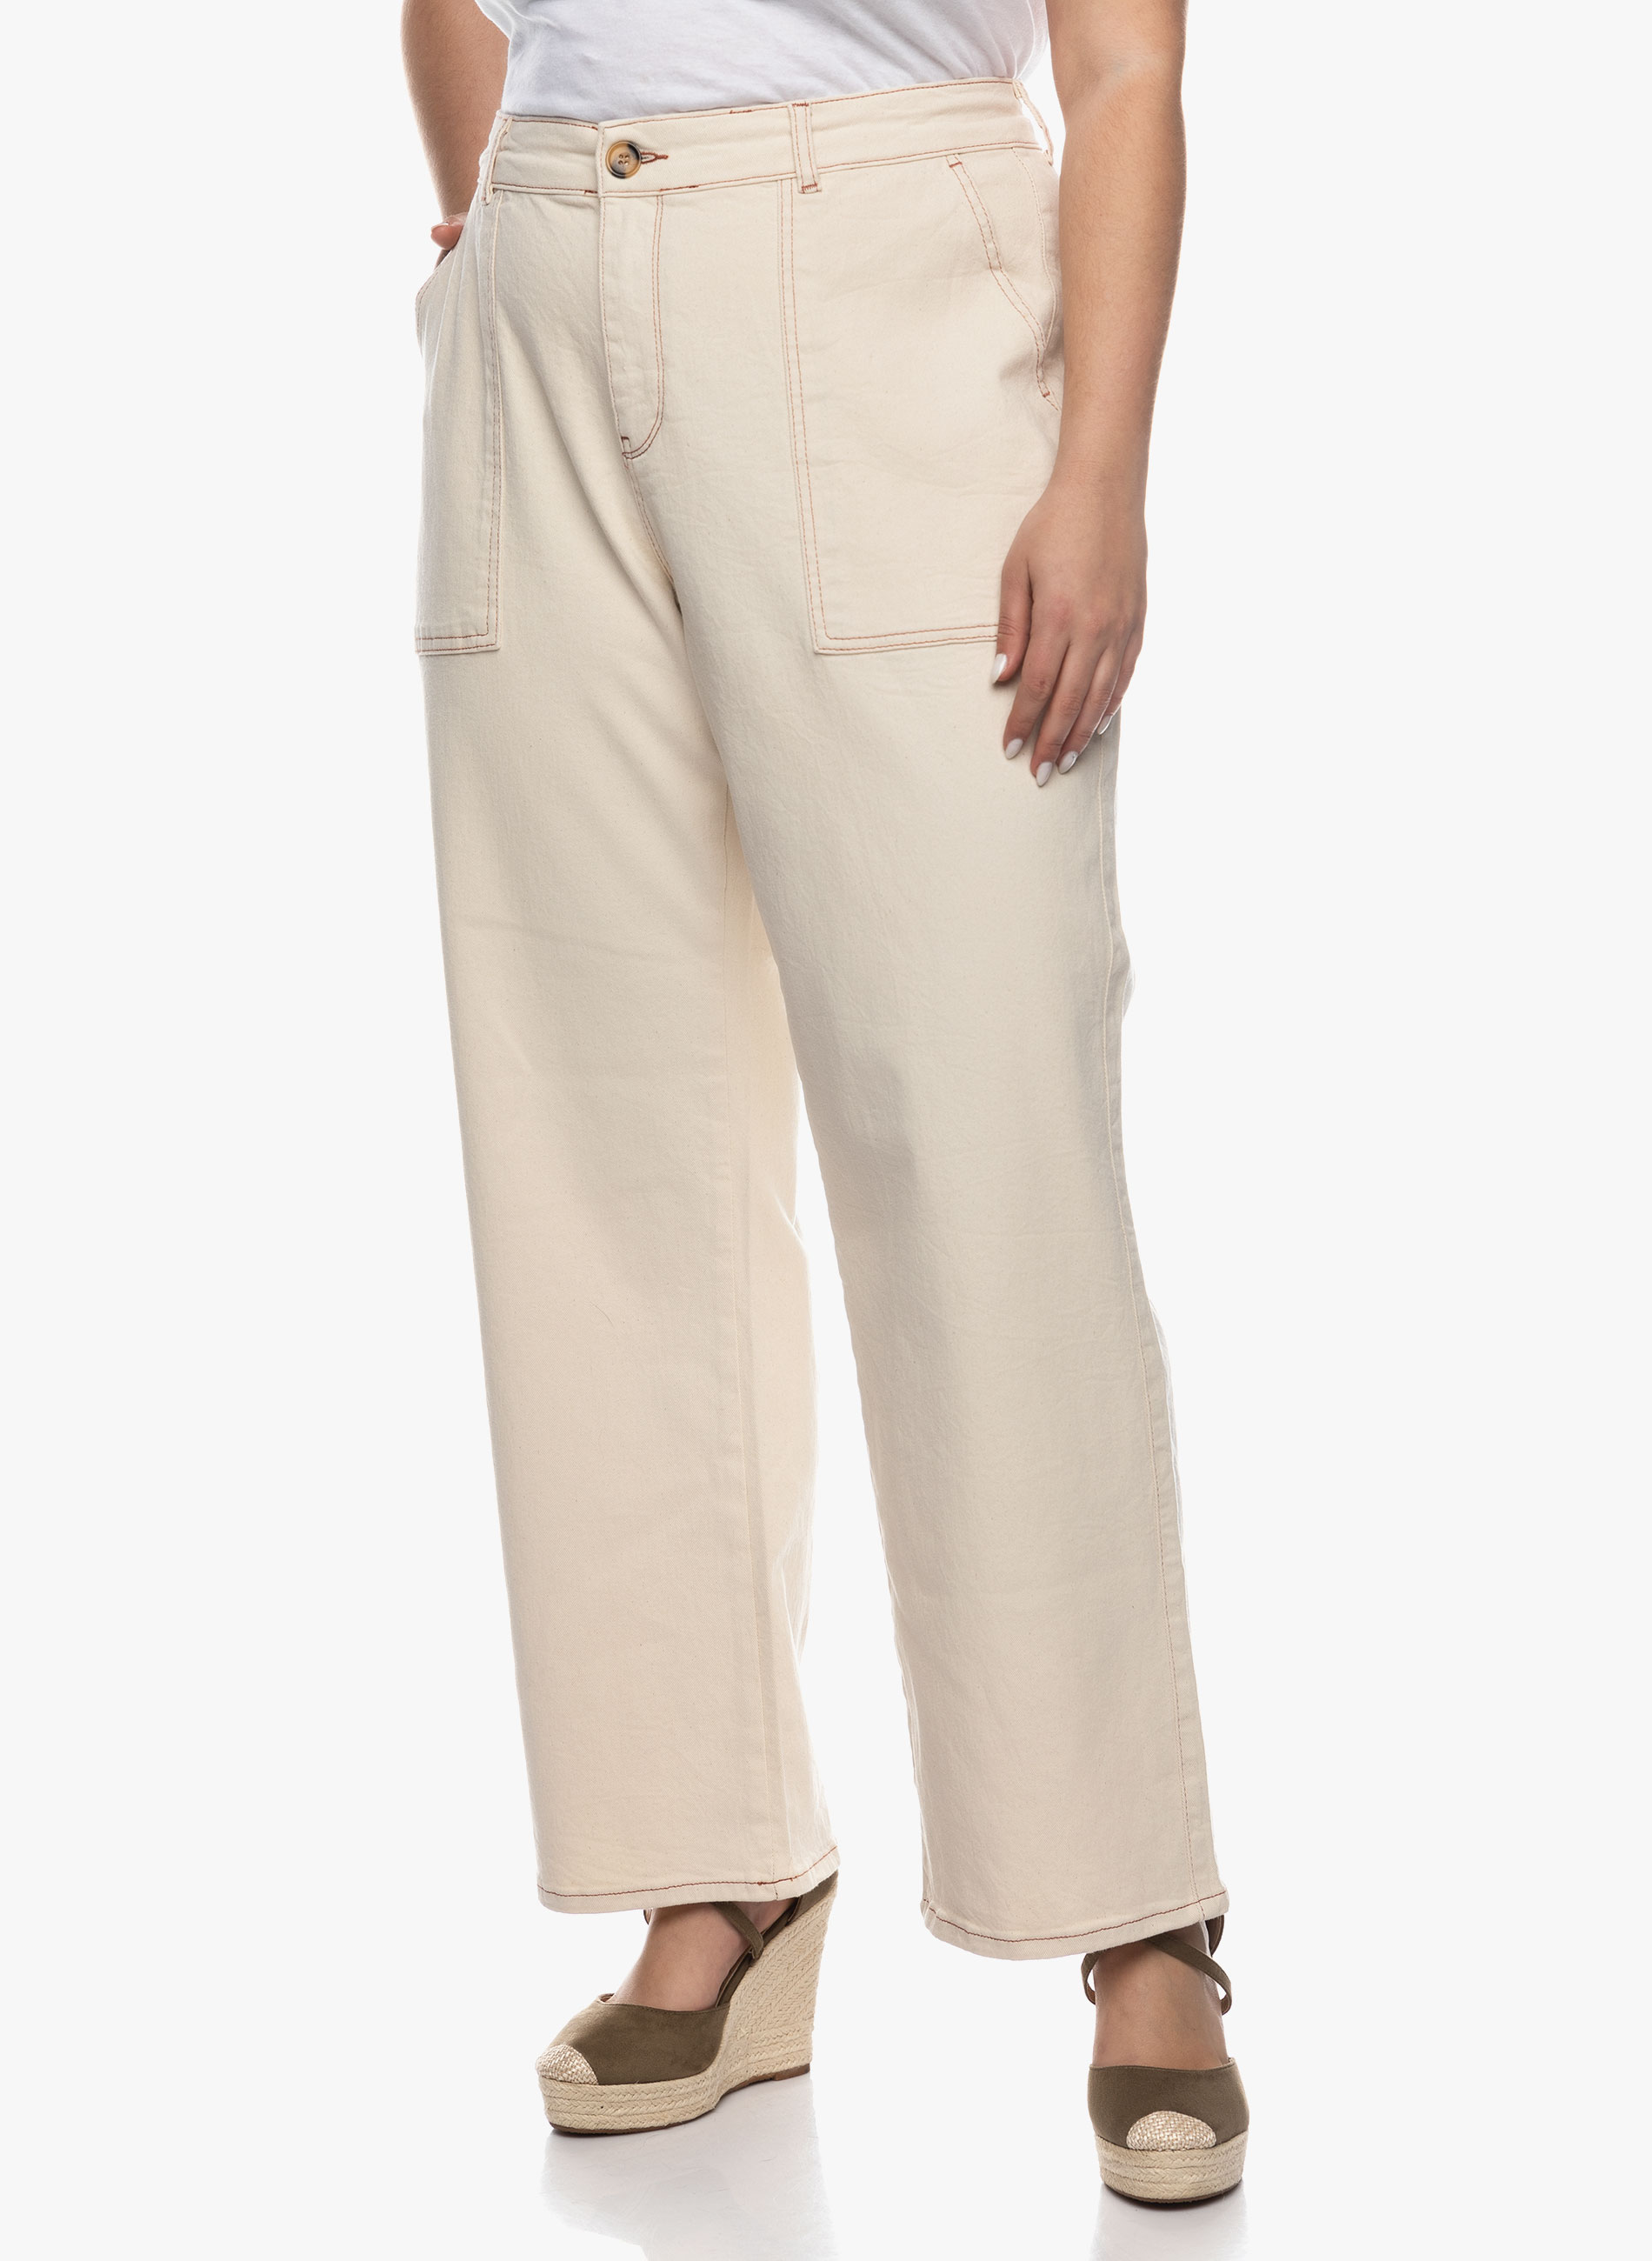 Παντελόνι σε ίσια γραμμή σε εκρού χρώμα με utility τσέπες στο πλάι, διαθέτει κουμπί και φερμουάρ στην μέση.